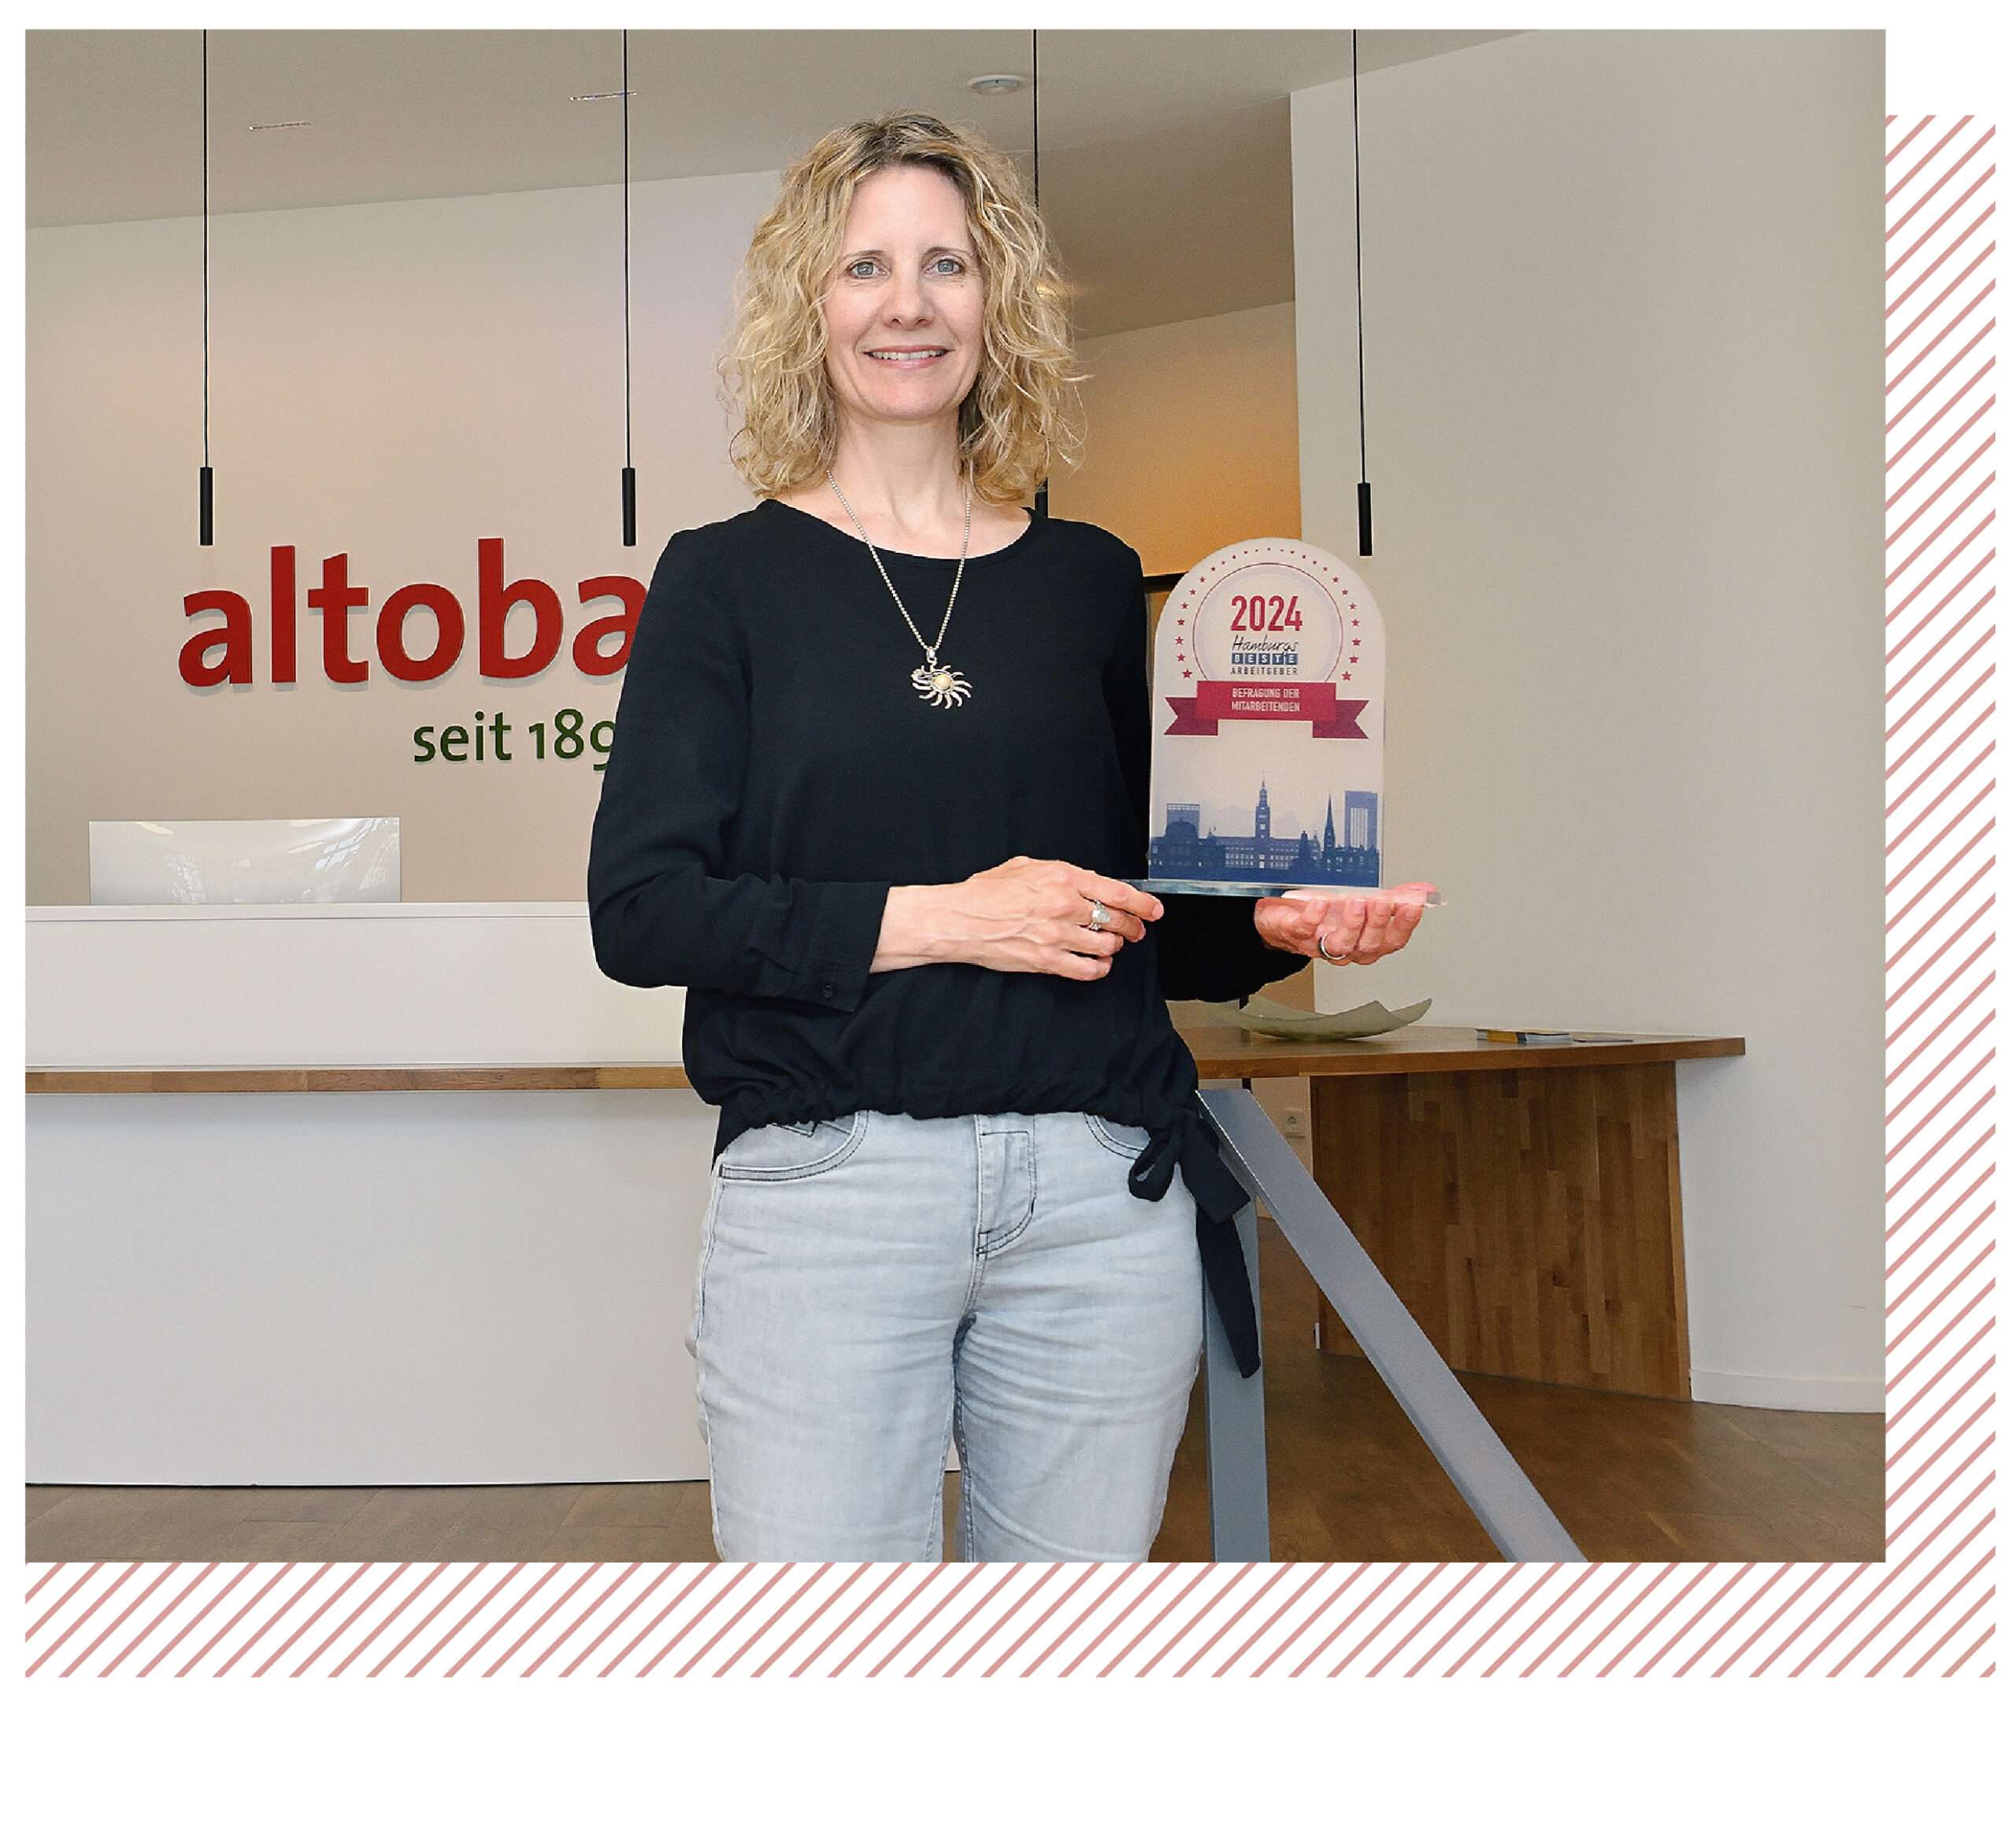 Bild von Ute de Vries in einem Bürogebäude, wie sie eine Auszeichnung in der Hand hält.